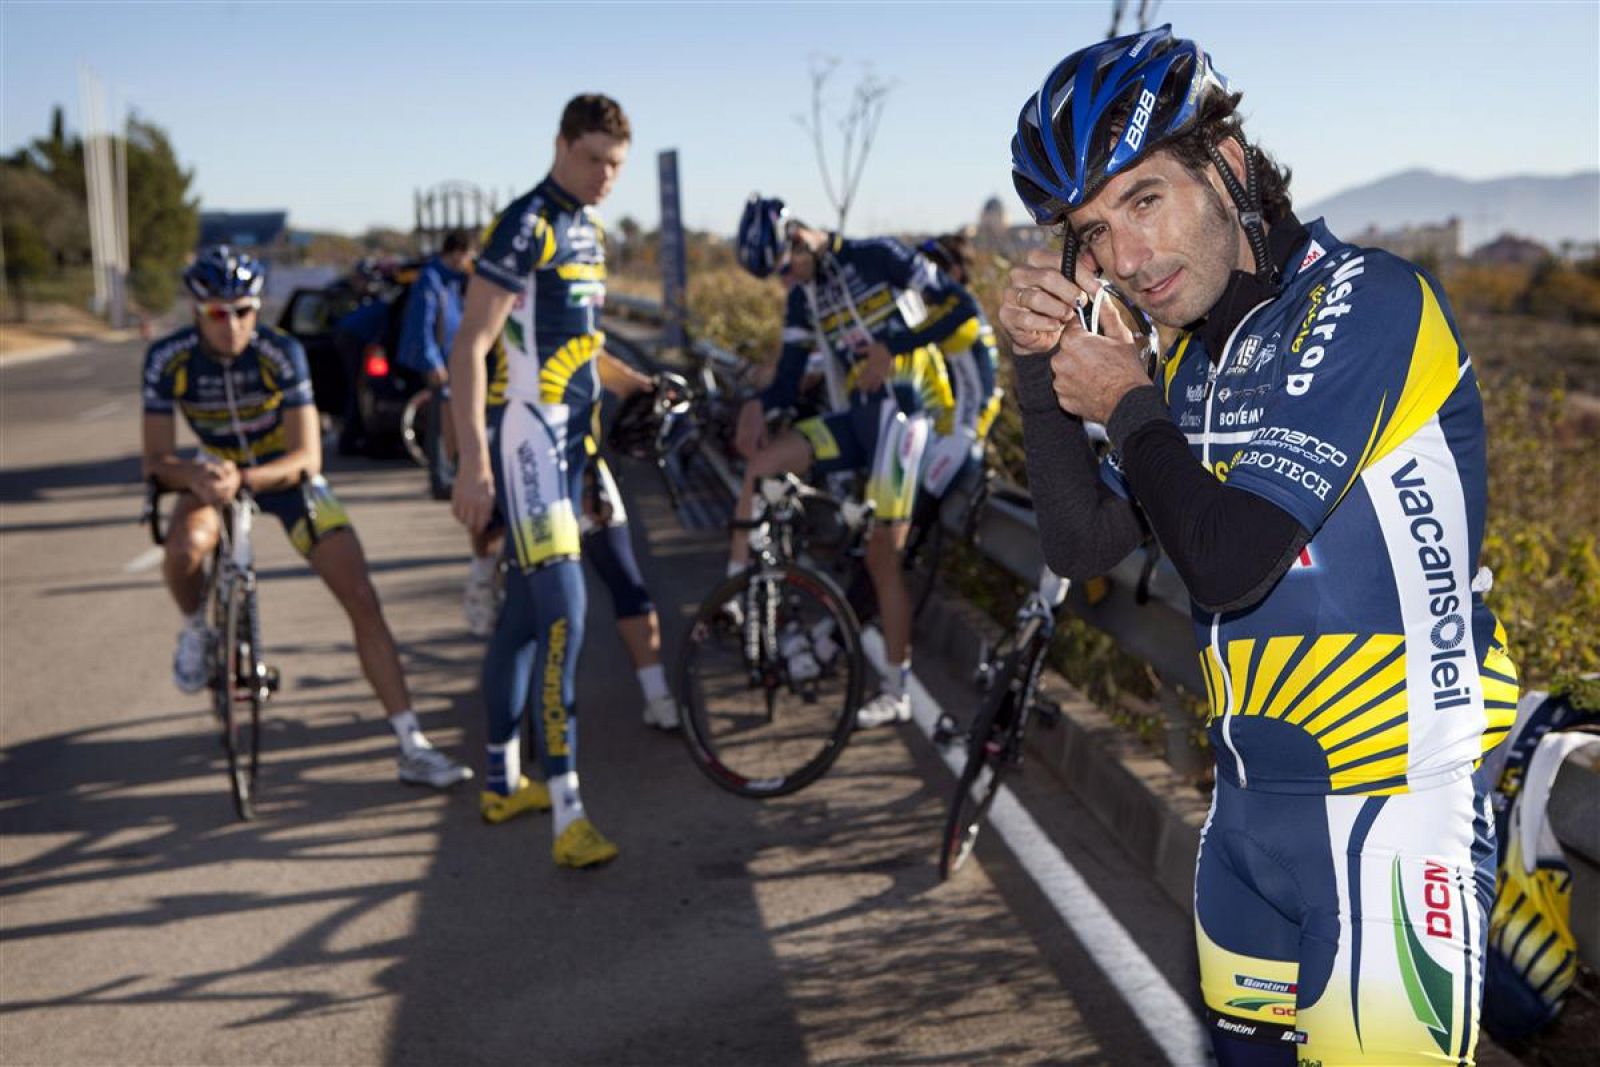 El ciclista español Ezequiel Mosquera posa con el maillot de su equipo Vacansoleil.